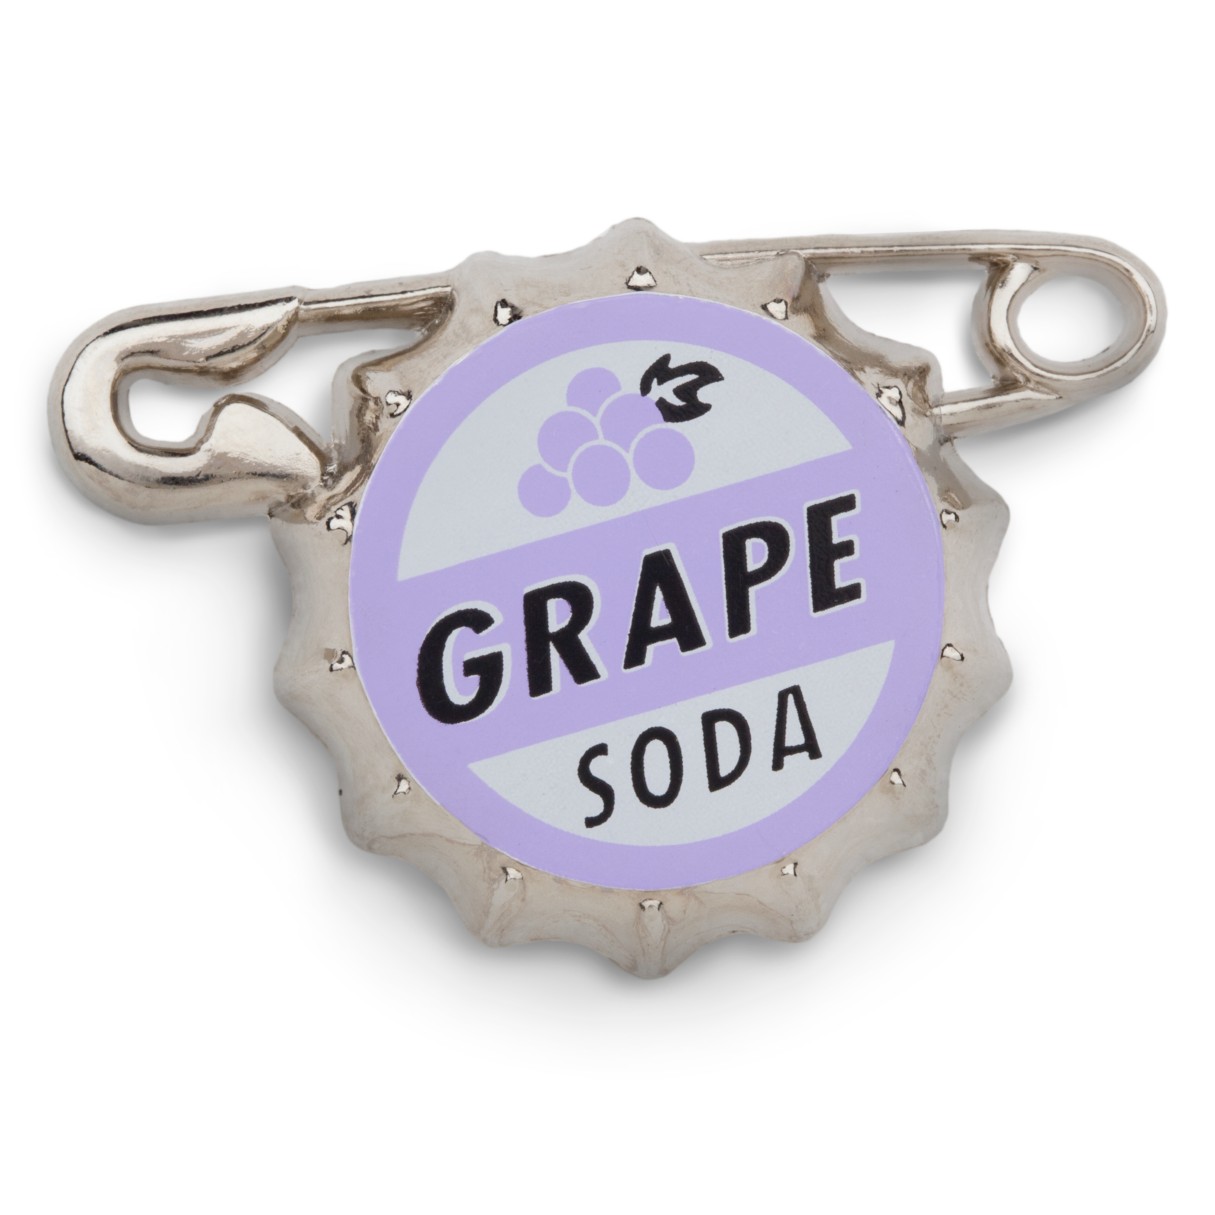 Russell's Grape Soda Bottlecap Pin – Up